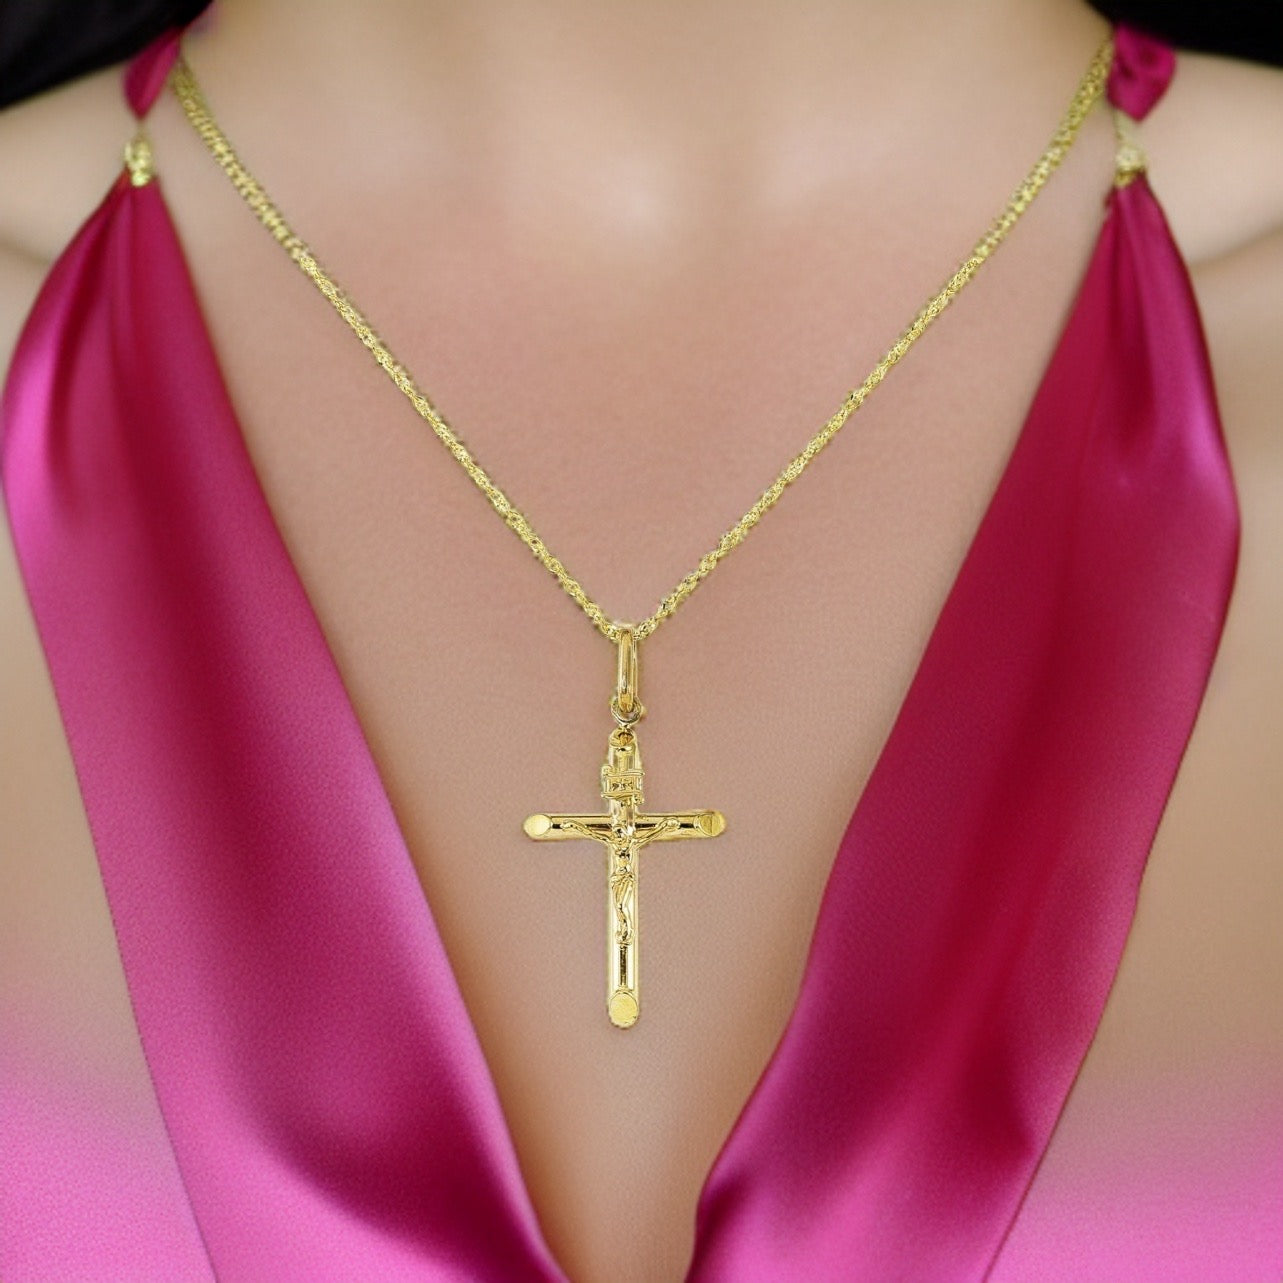 20 Unique Cross Necklaces For Men - Yoper